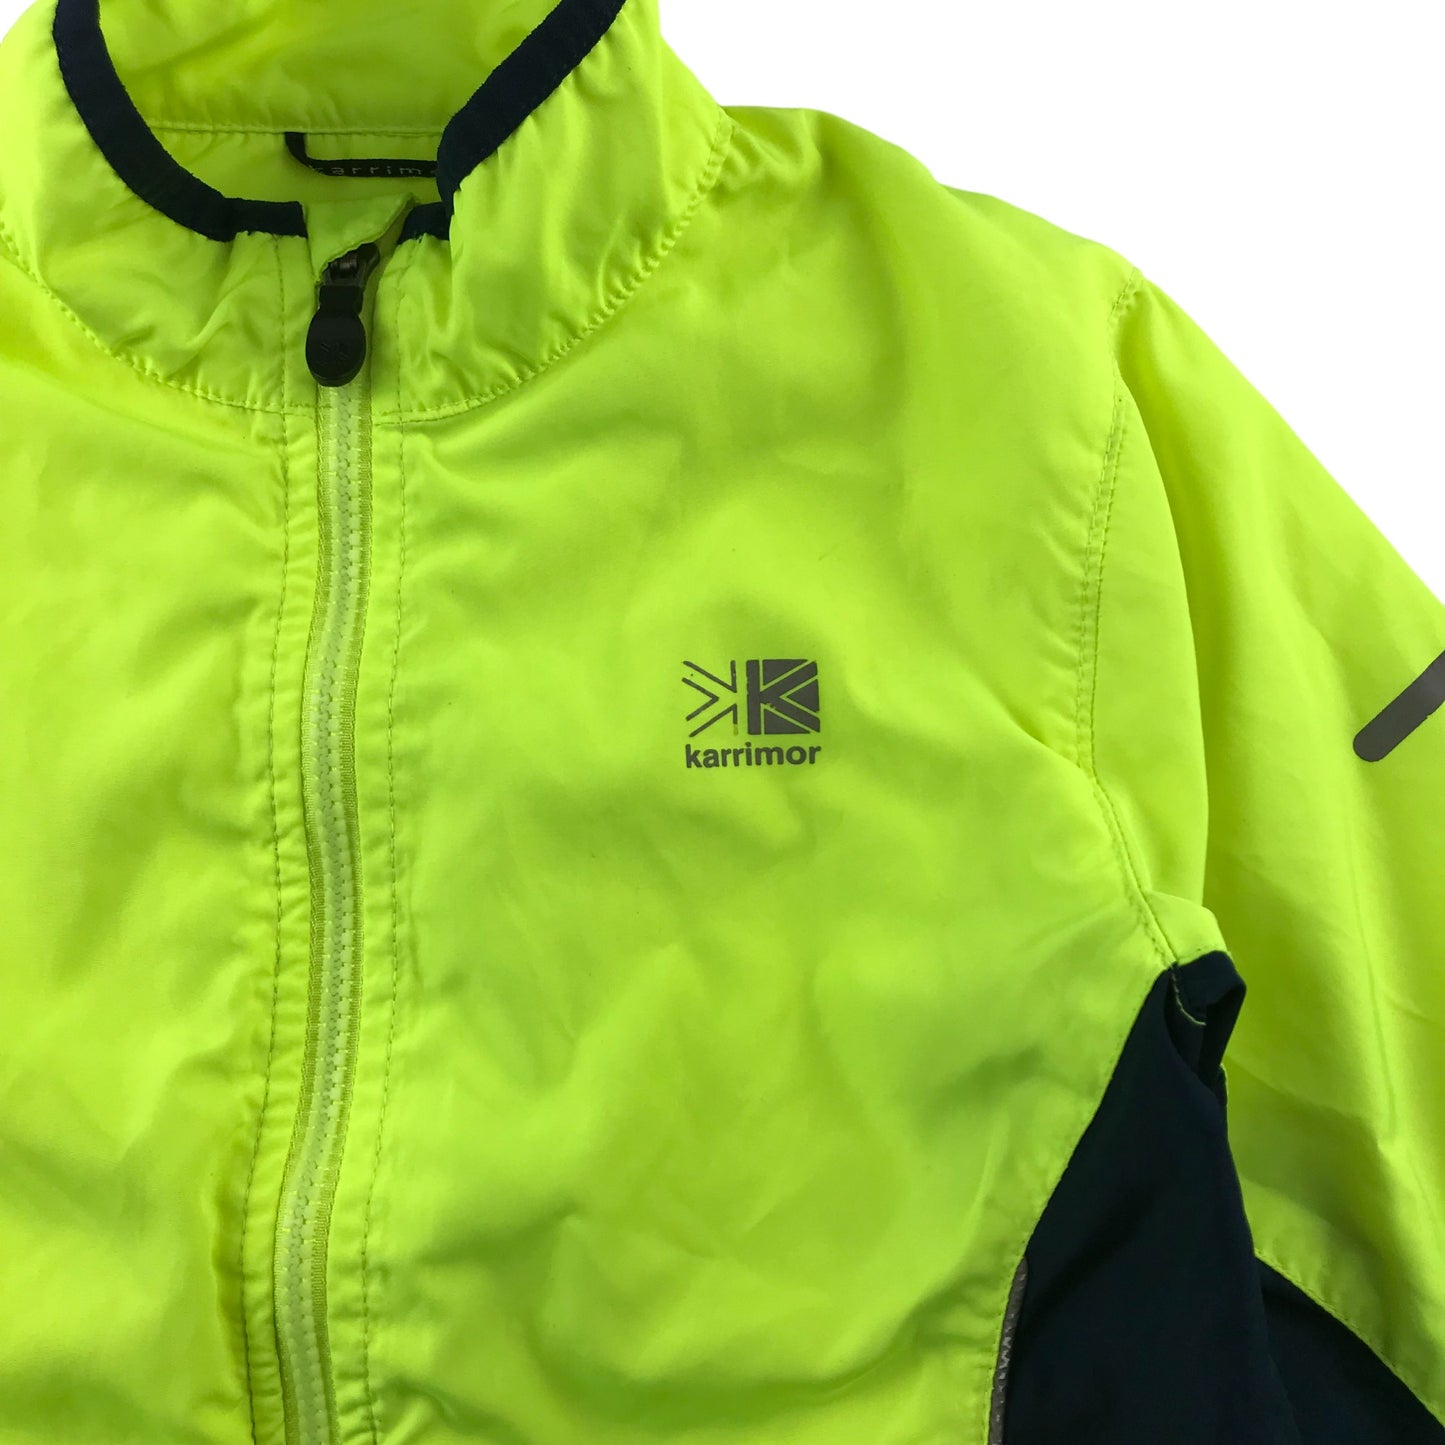 Karrimor light jacket 9-10 years neon yellow cycling jacket